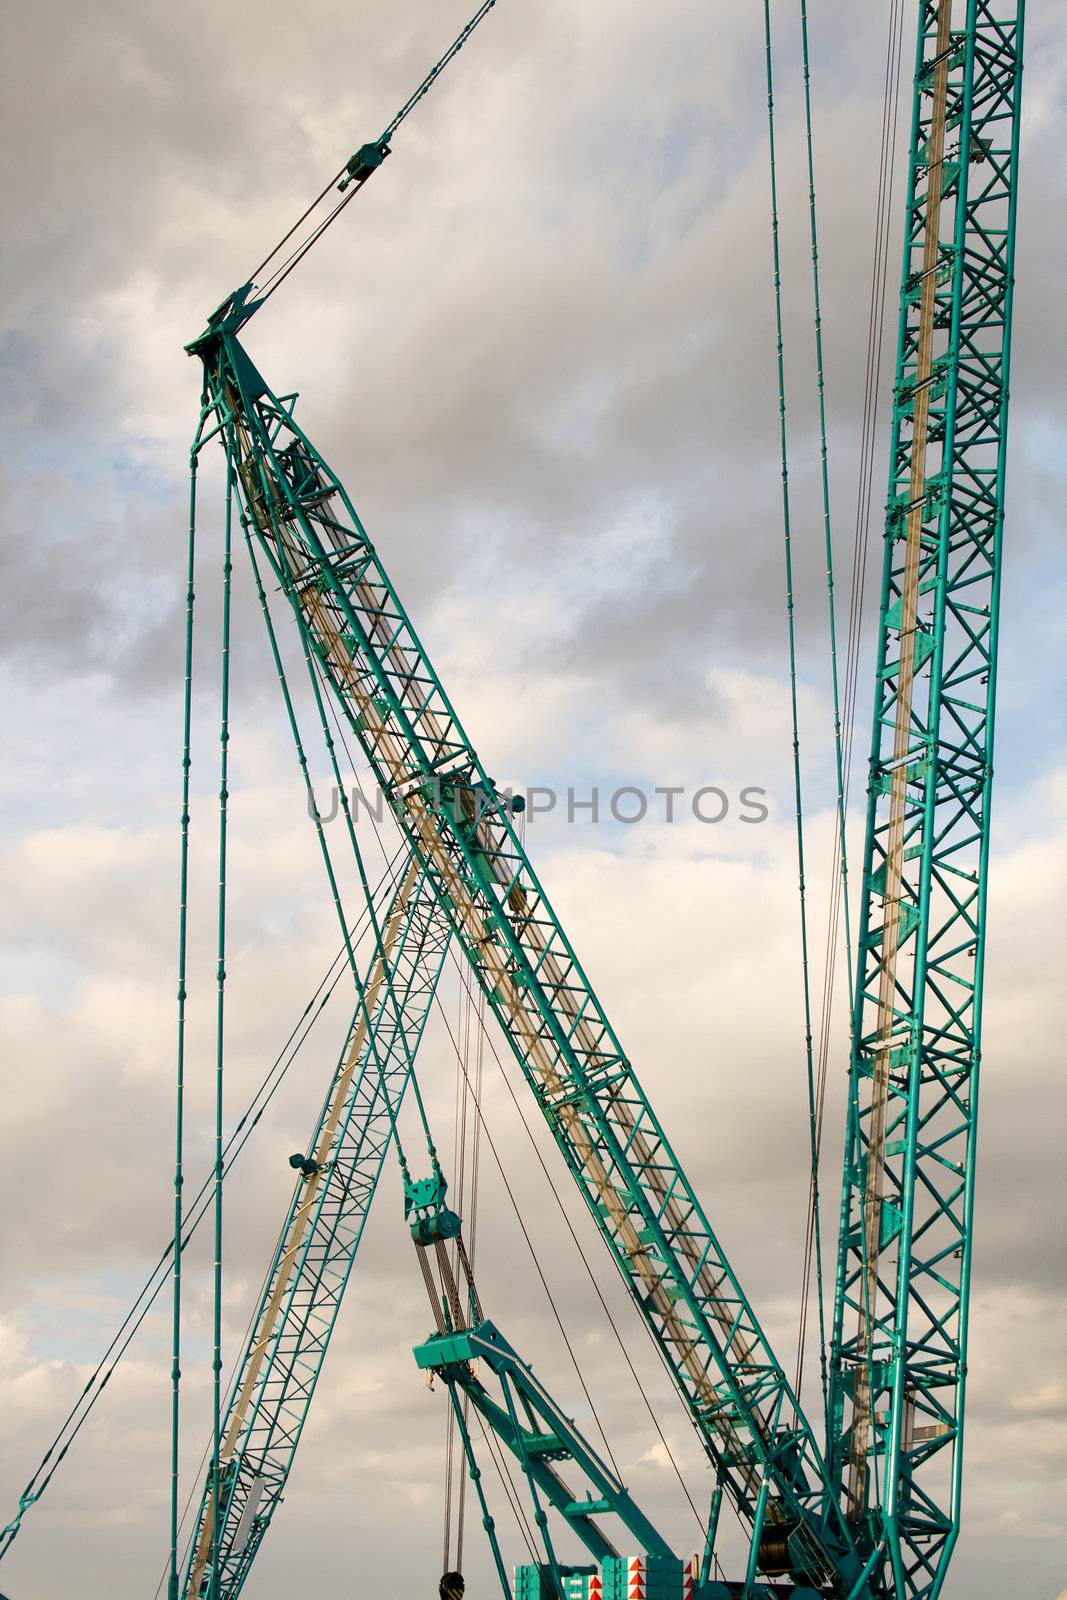 Part of a huge mobile crane by Nickondr